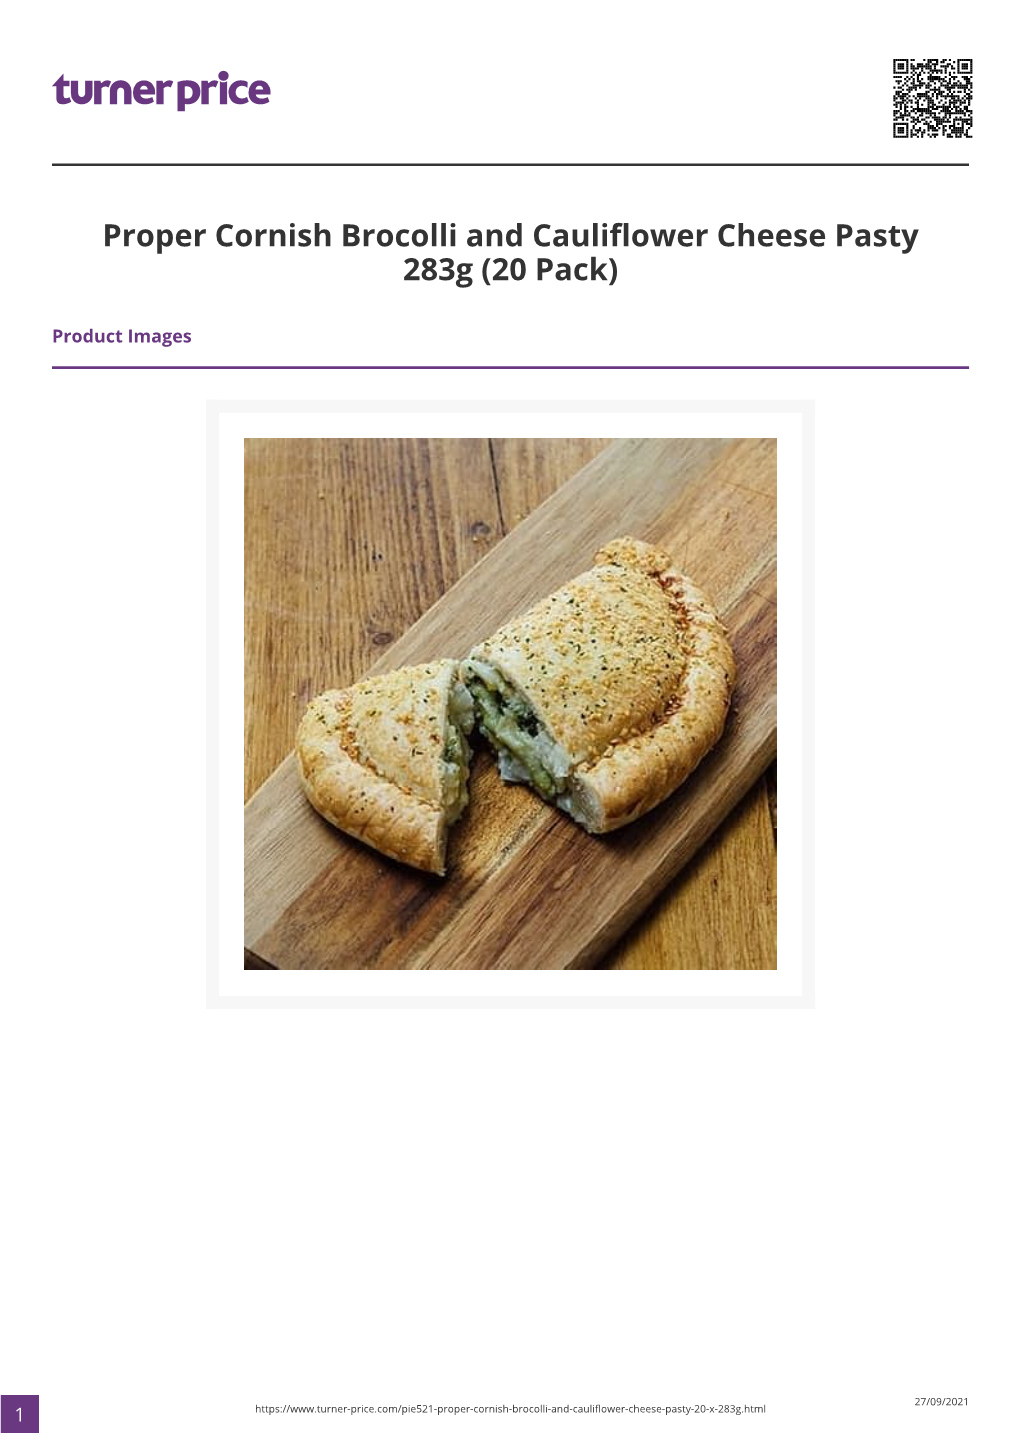 Proper Cornish Brocolli and Cauliflower Cheese Pasty 283G (20 Pack)